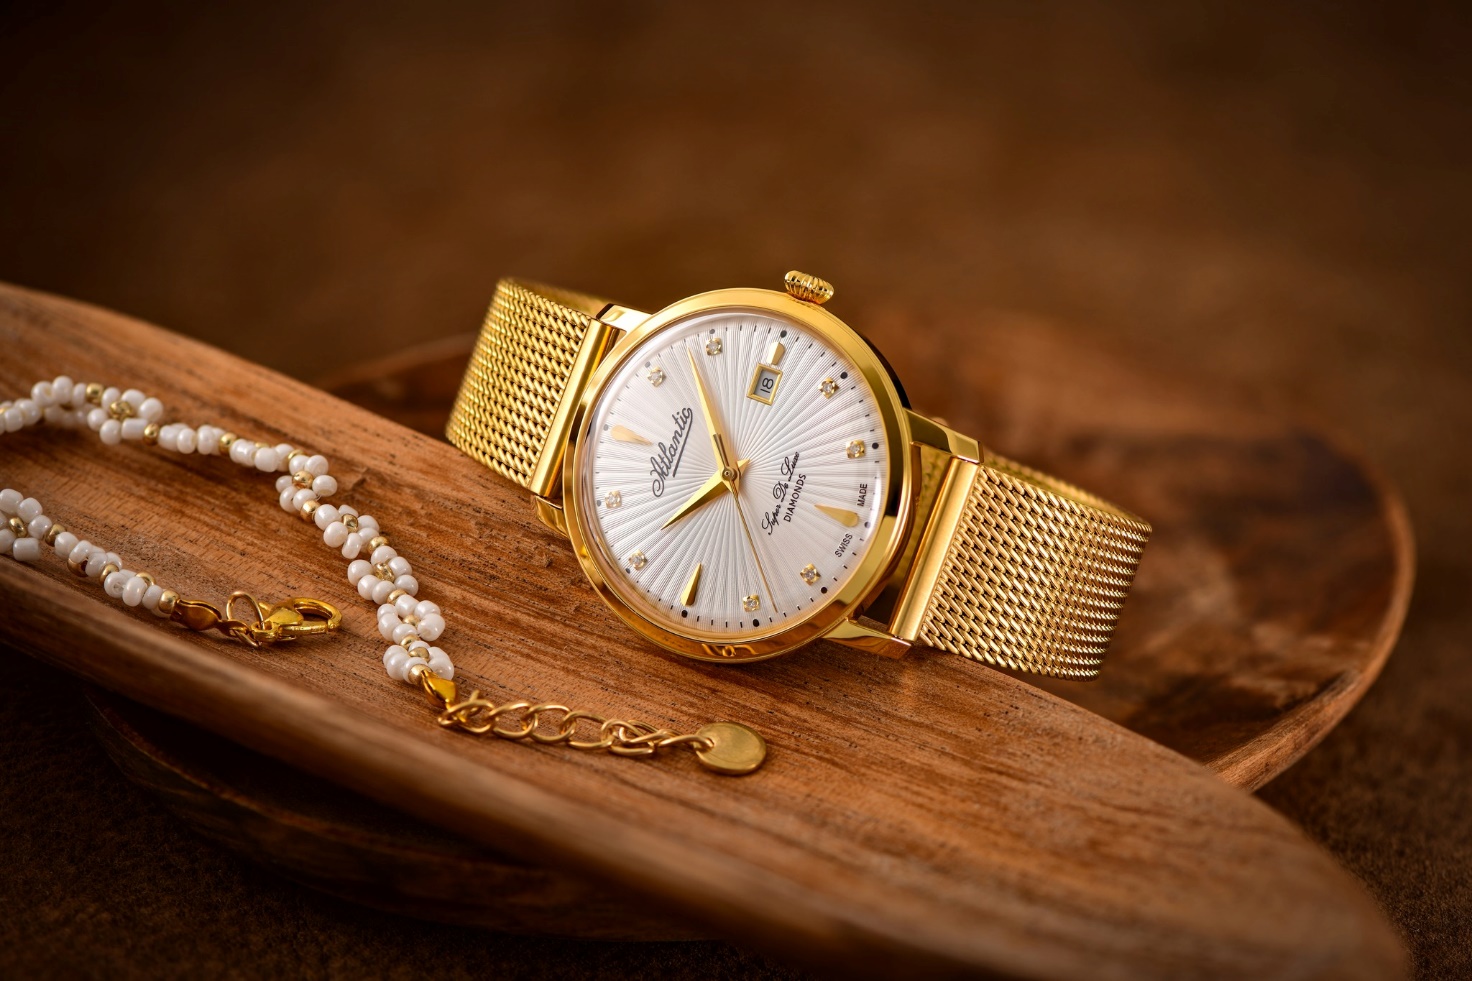 Gợi ý lựa chọn đồng hồ đẹp mắt cho ngày Quốc tế Phụ nữ 8/3 - Ảnh 3.